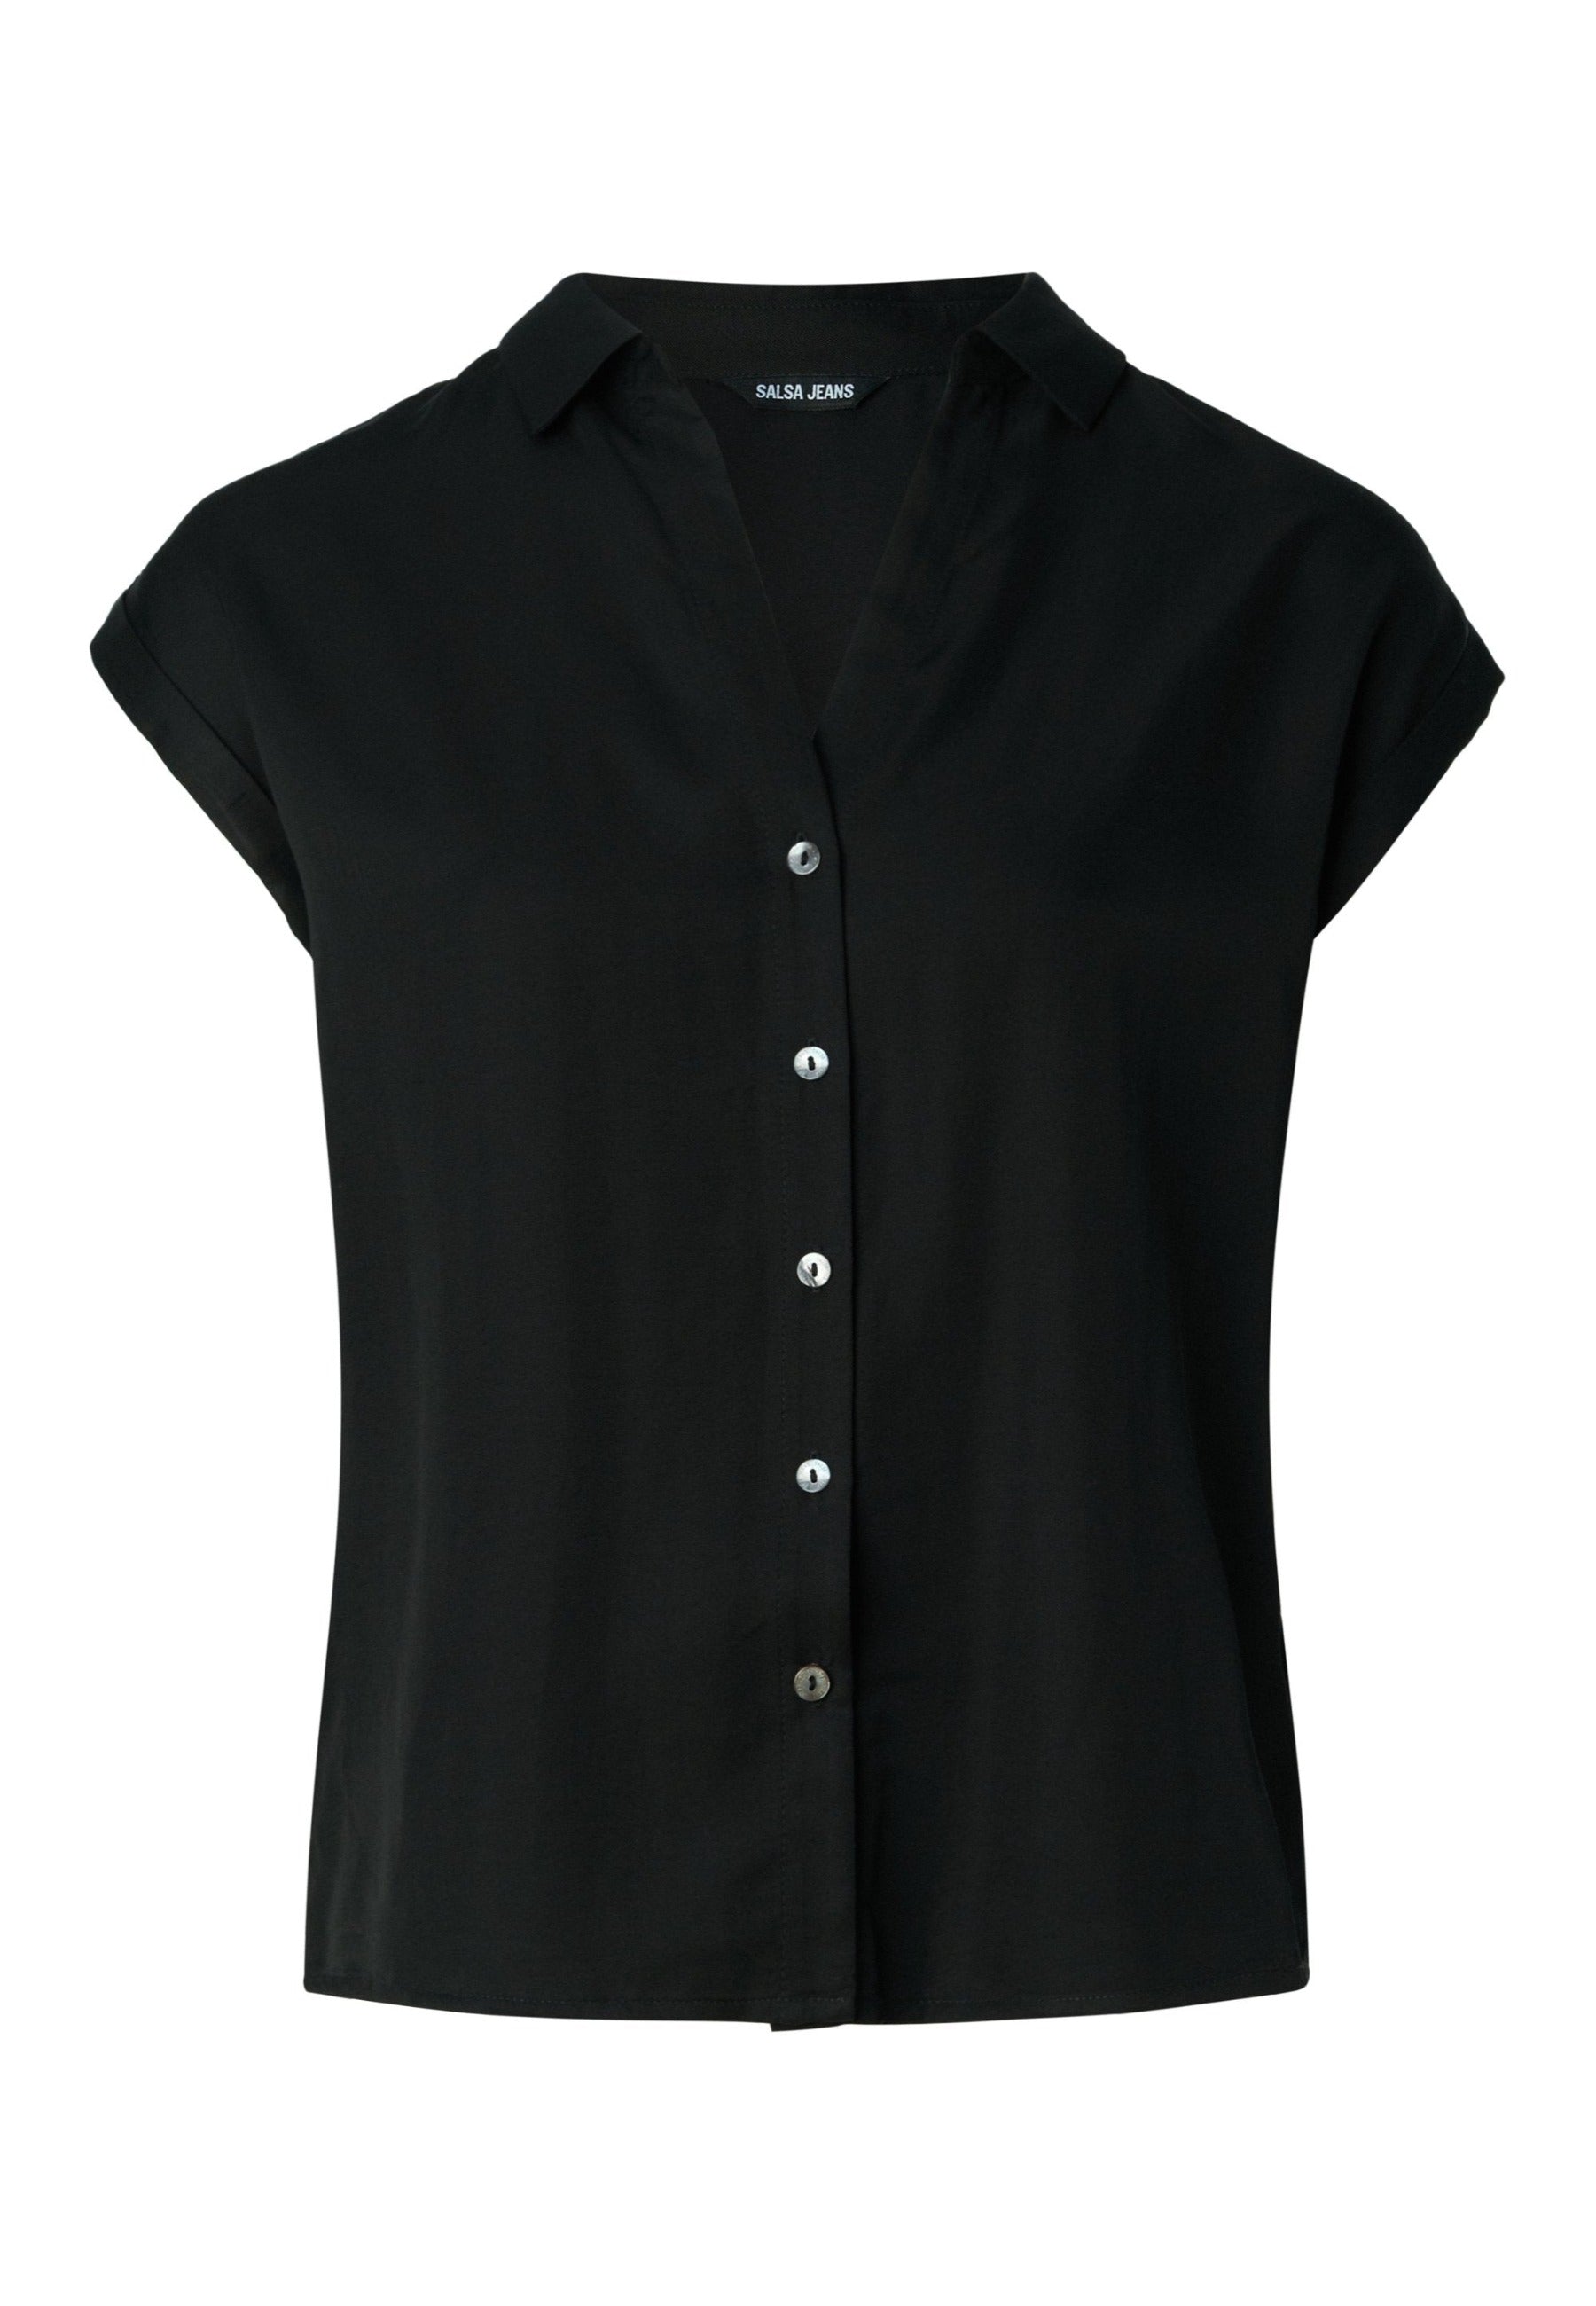 Basic Sleeveless Shirt in Black Tops Salsa Jeans   